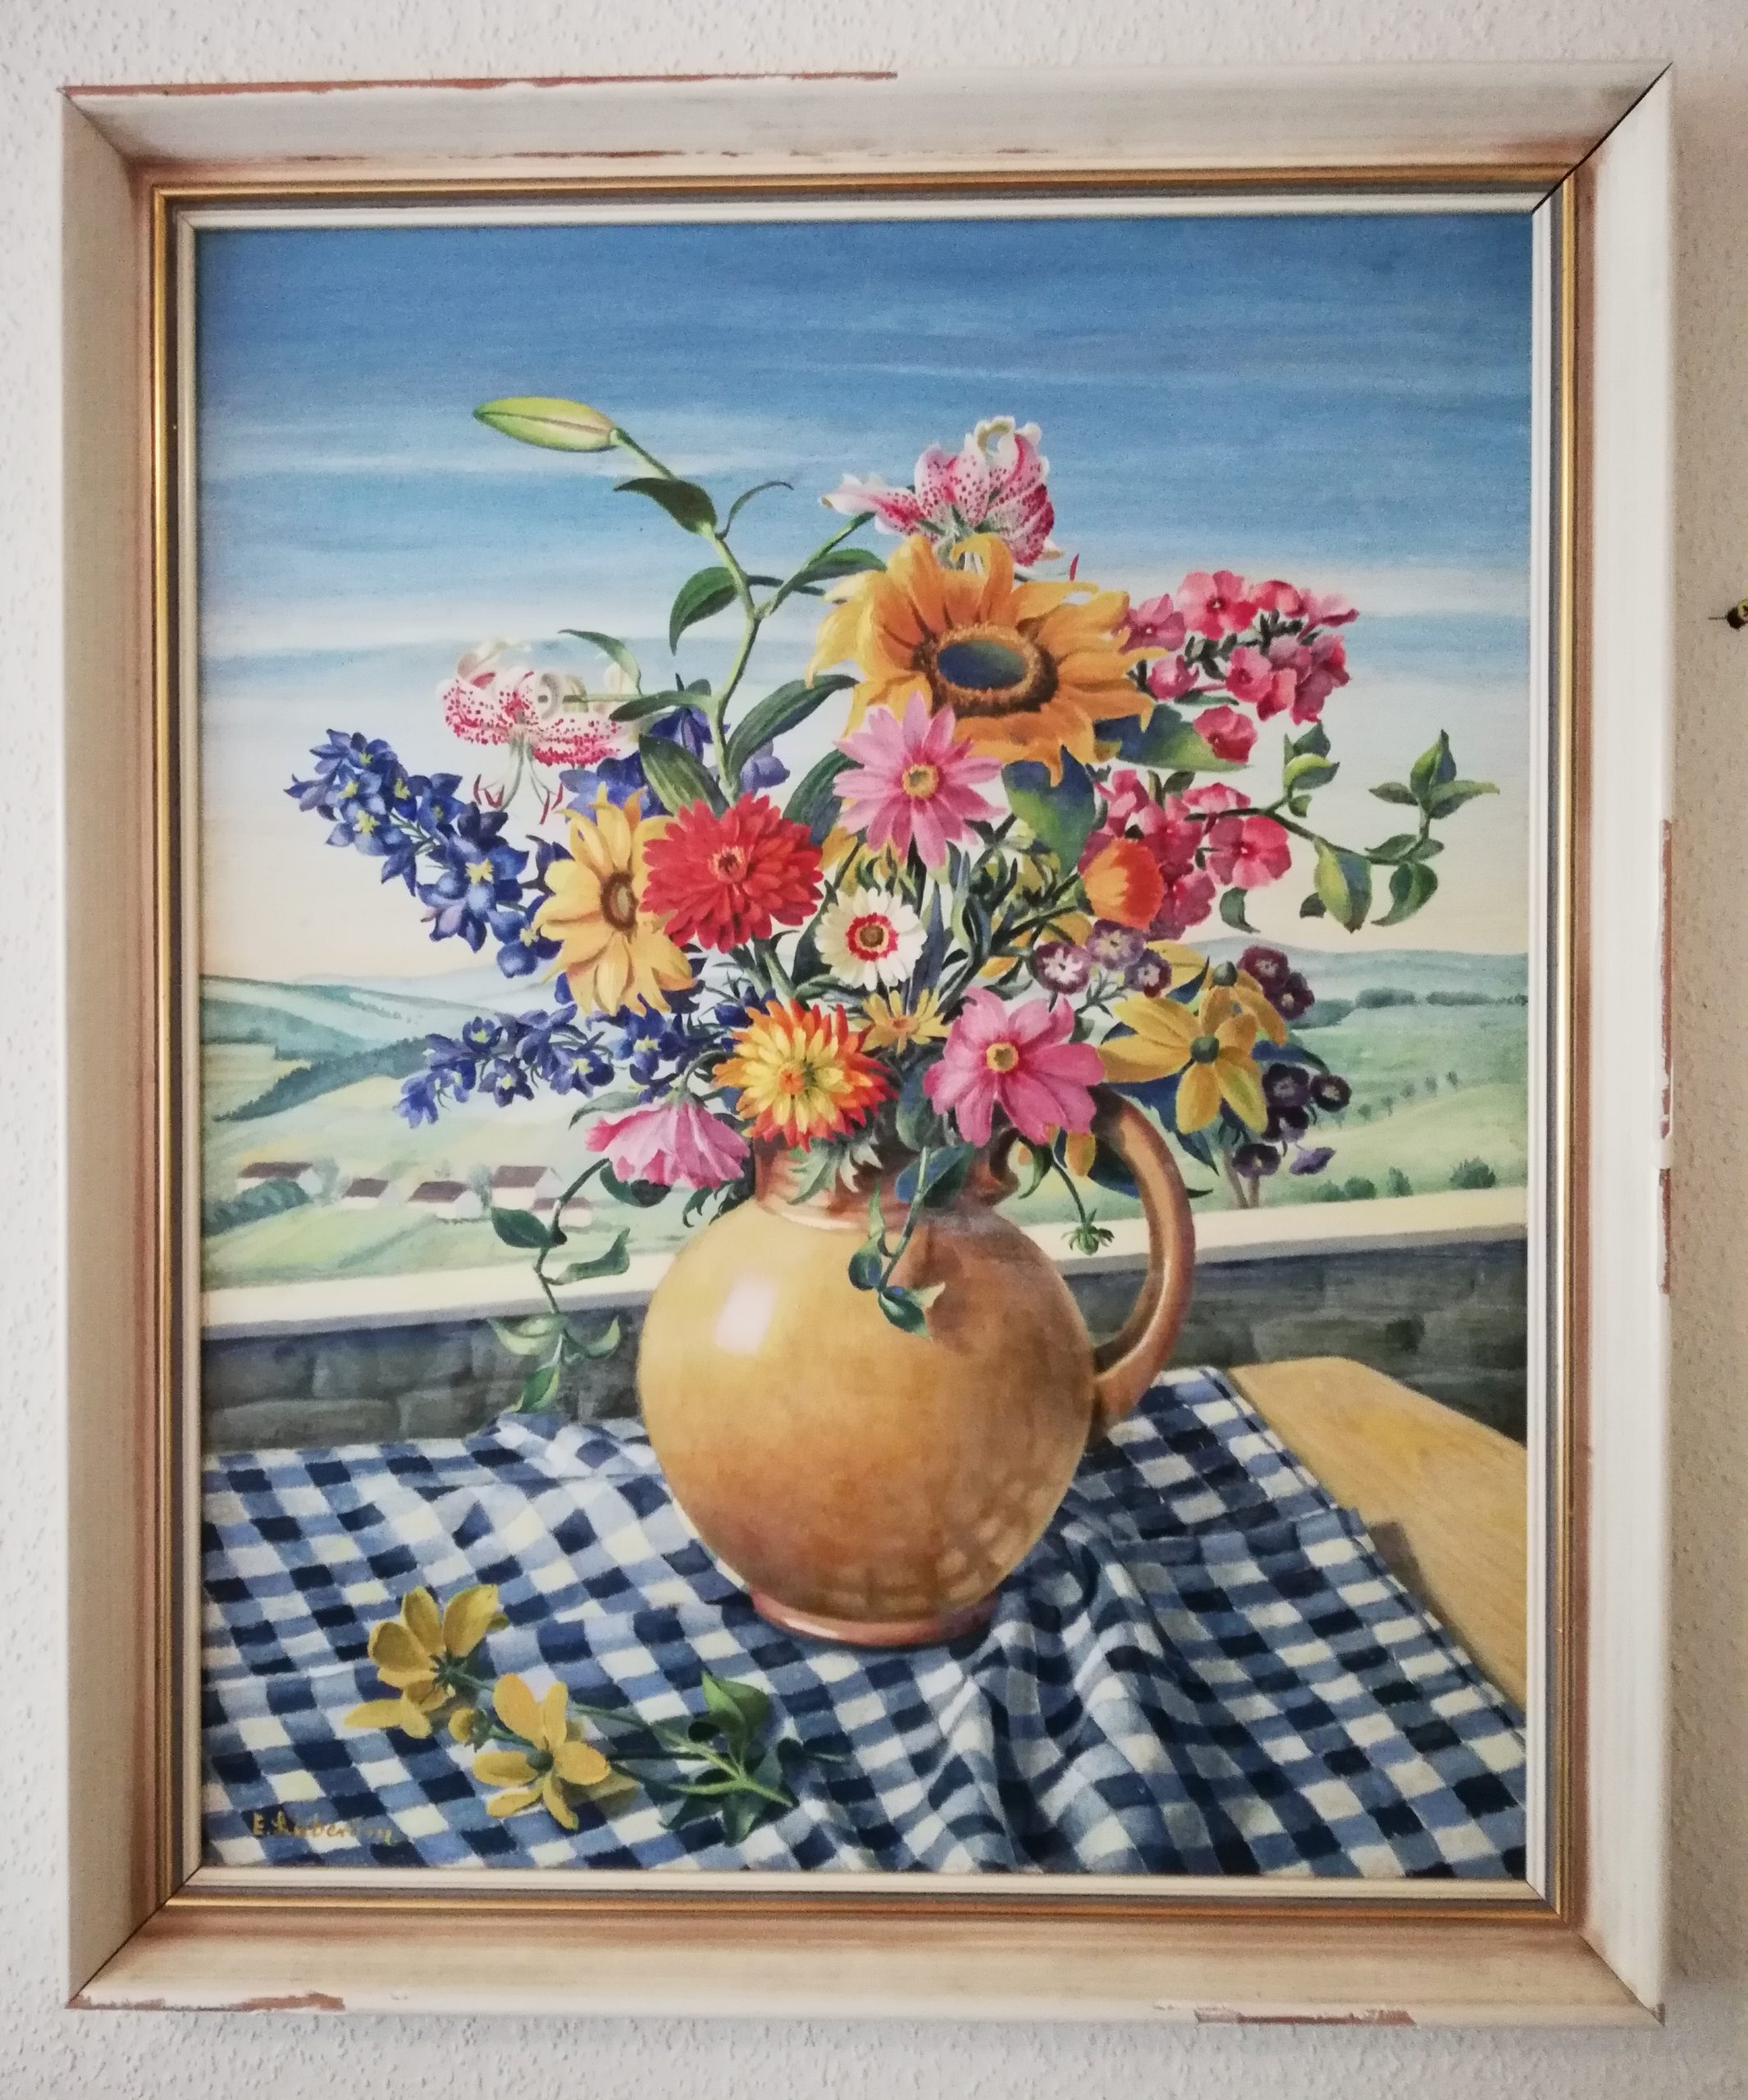 Picture bouquet in vase – Bild Blumenstrauß in Vase